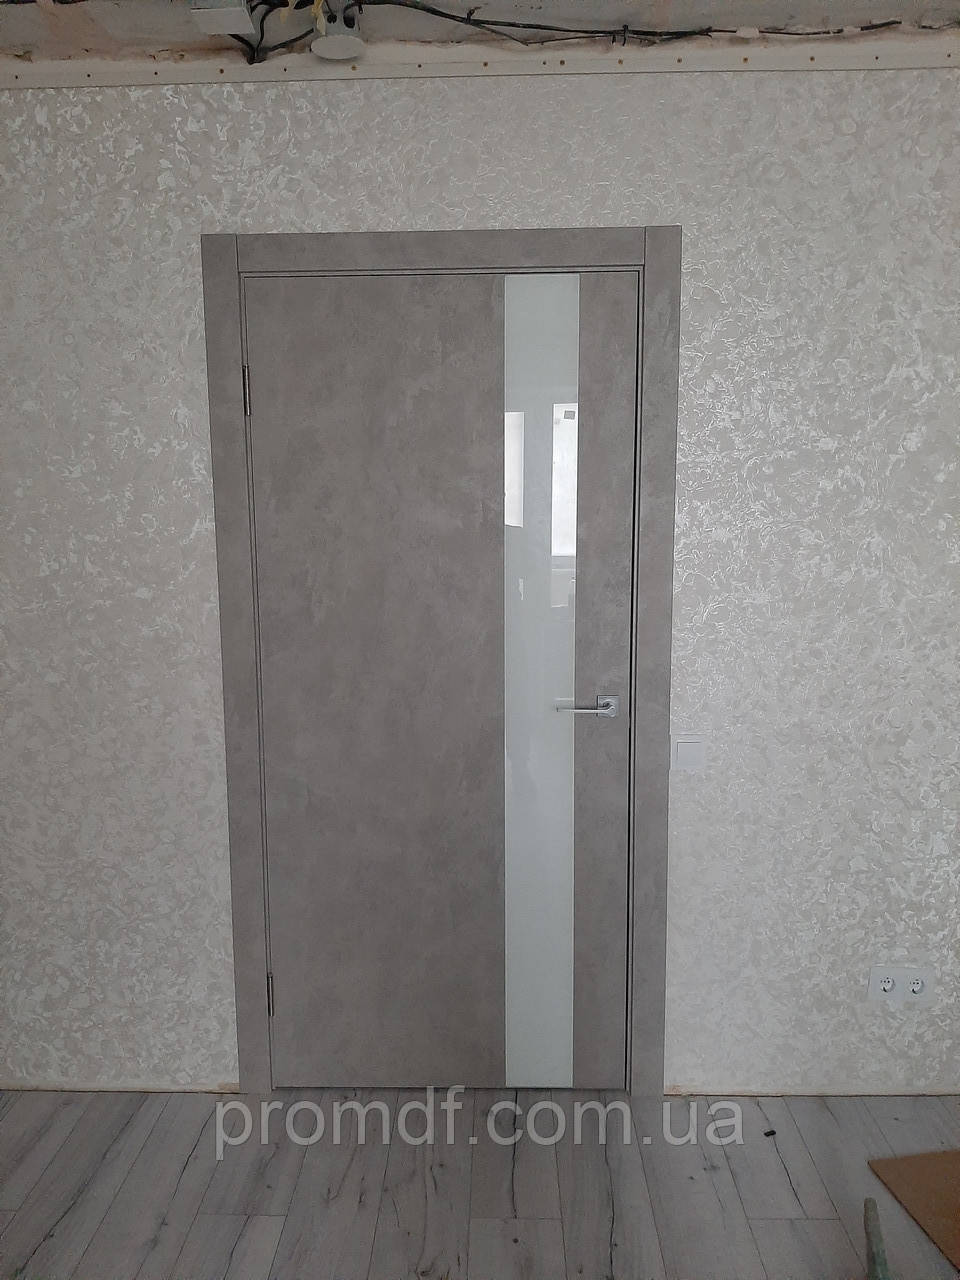 Дверний блок бетон попелястий + скло білий діамант